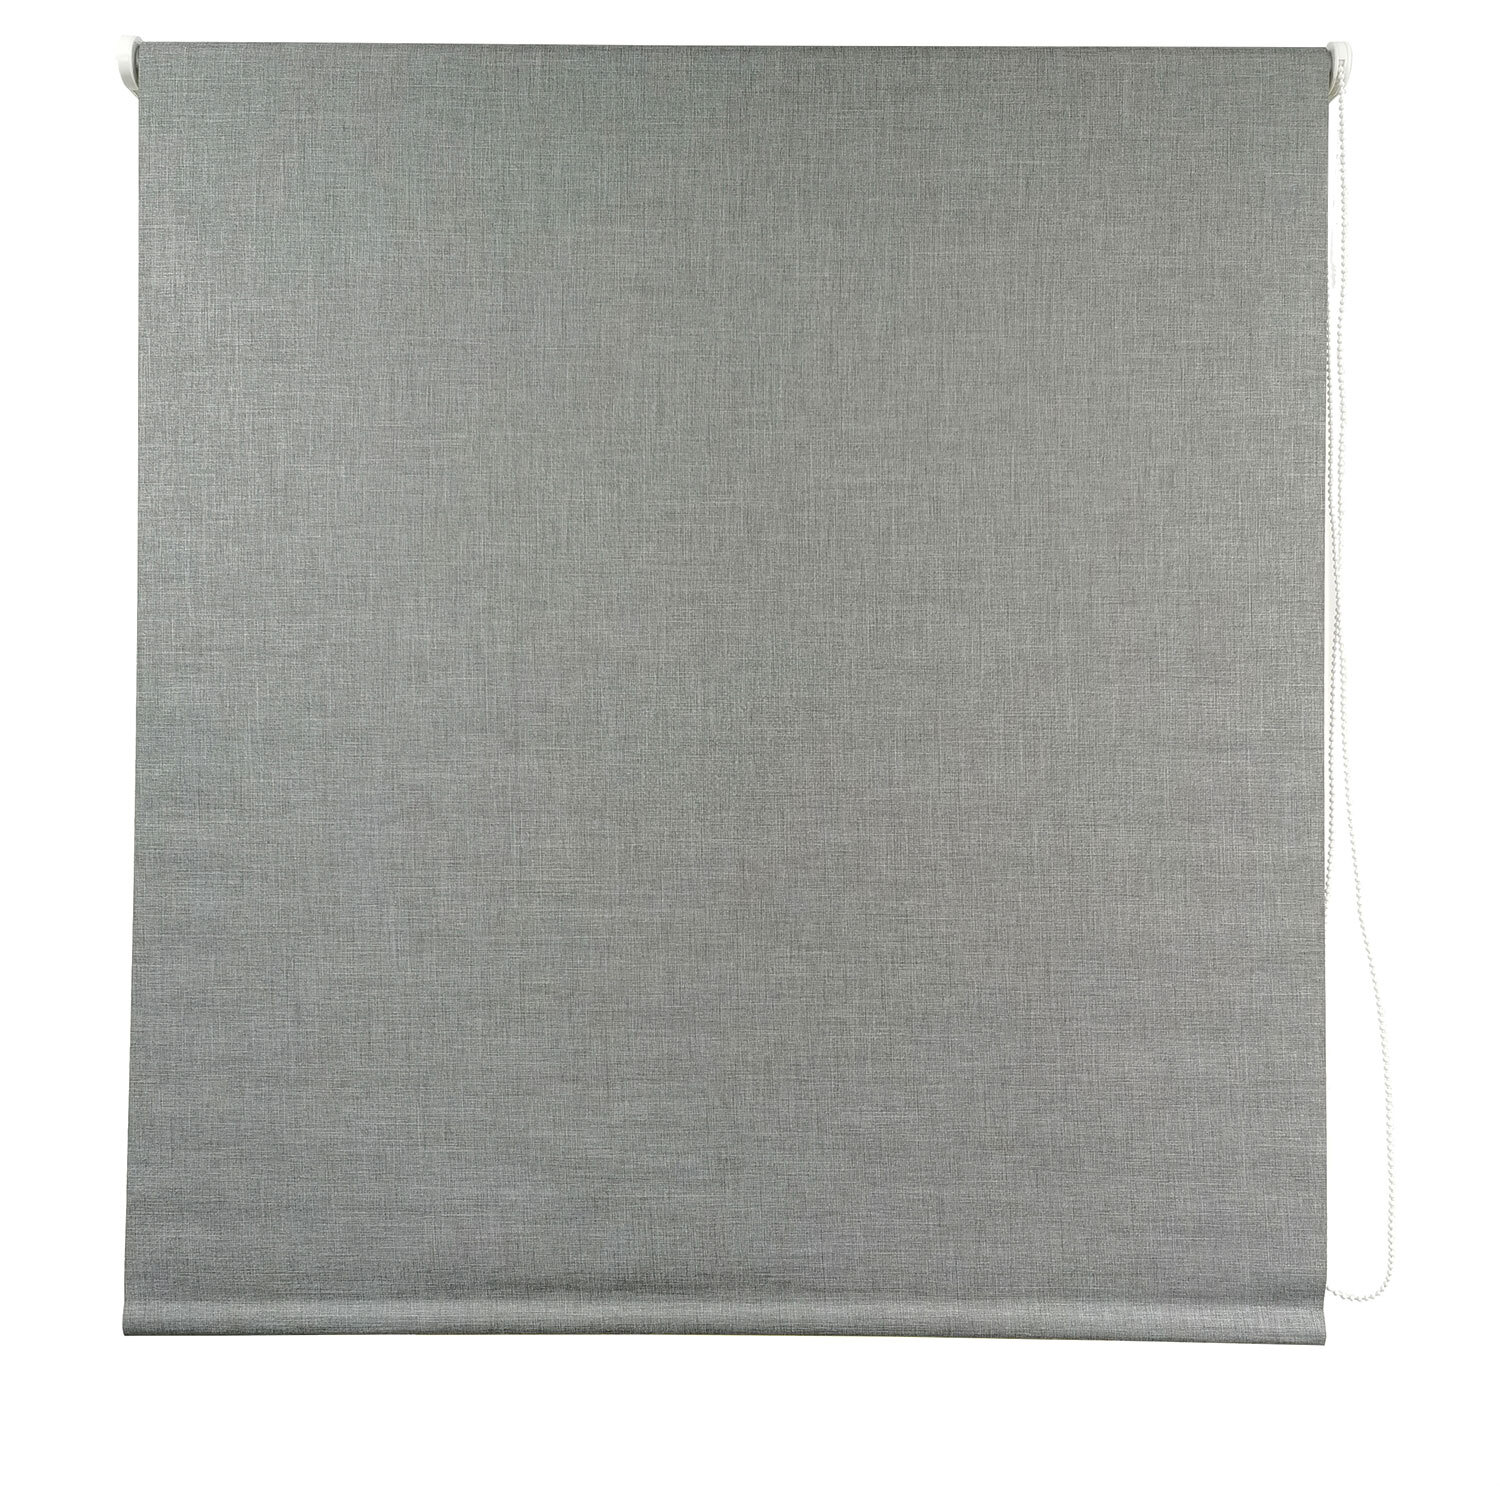 Textured Blackout Blind - Soft Grey / 180cm Image 2